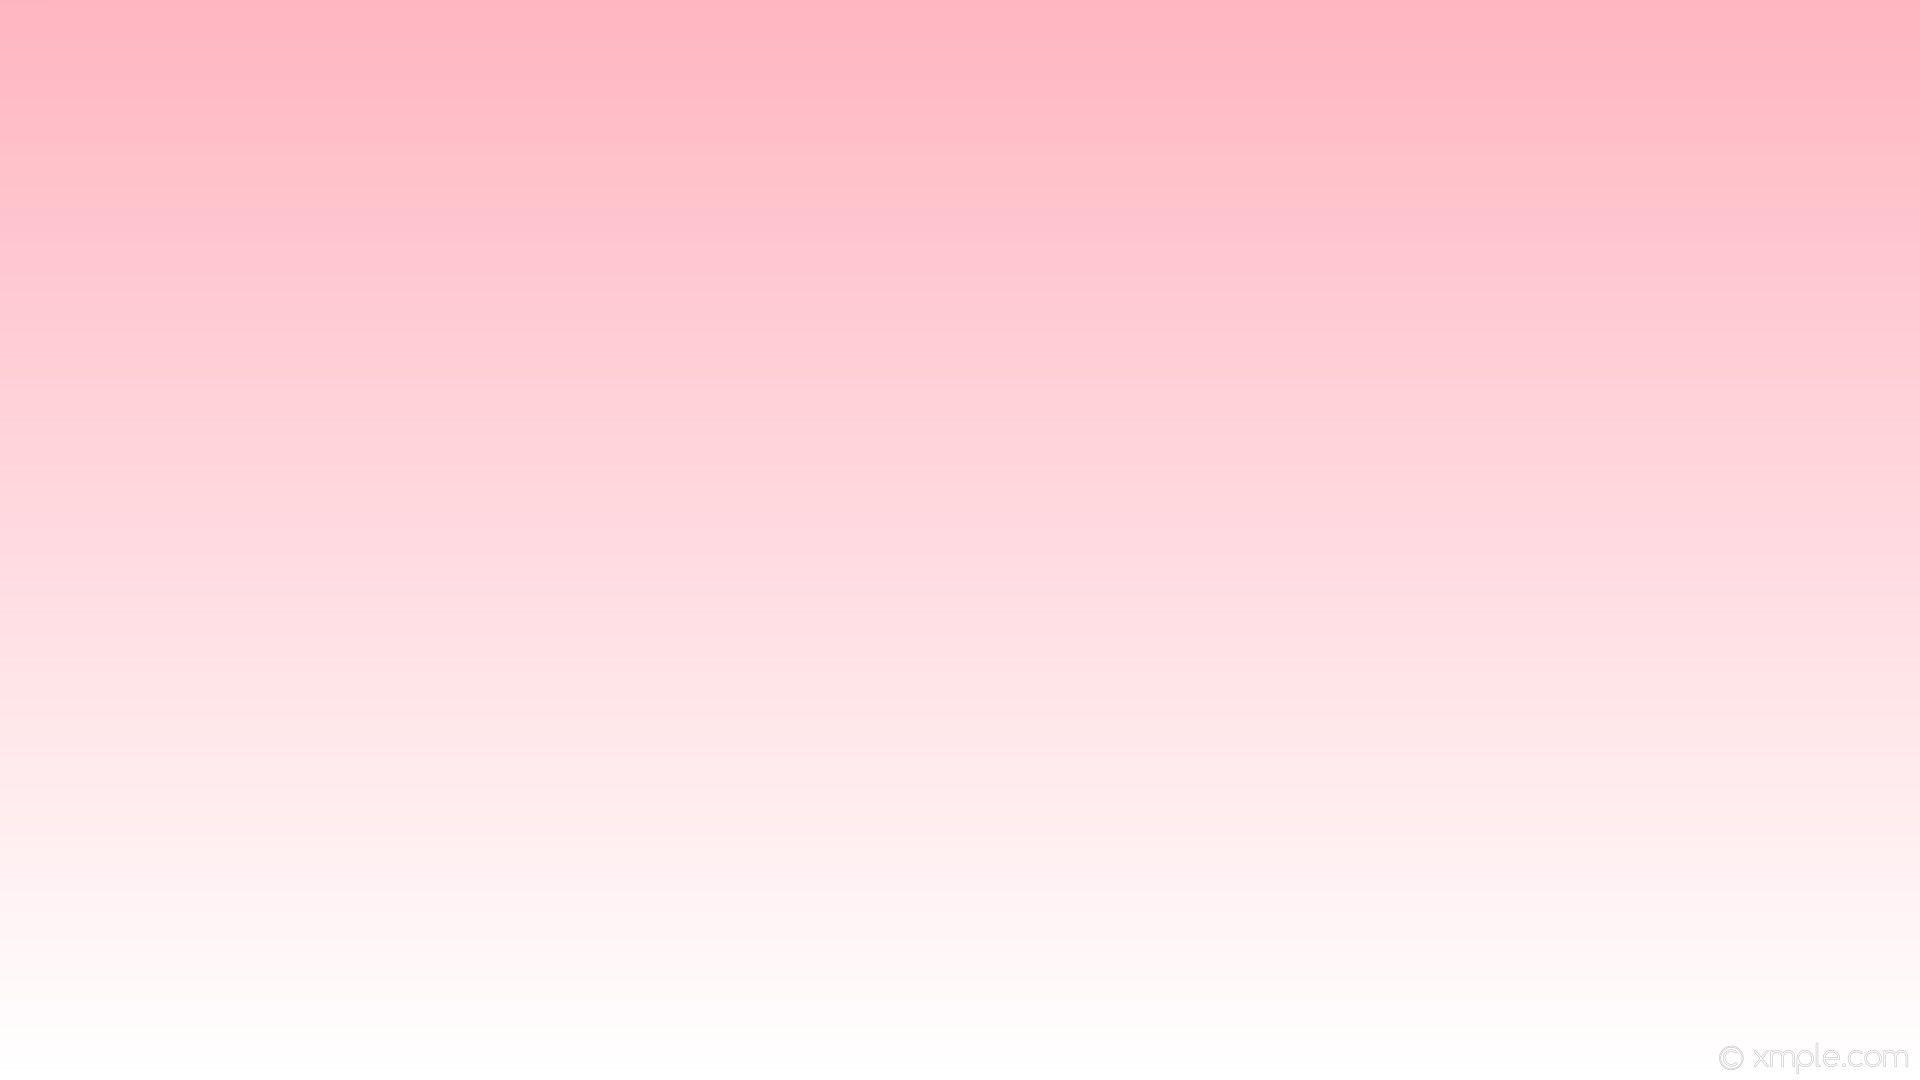 Tông màu hồng tươi tắn tràn ngập trên gradient giúp hình nền trở nên nữ tính và đầy sức sống. Hãy xem bức ảnh này để đón nhận sự tươi mới mà màu hồng mang lại cho bạn.